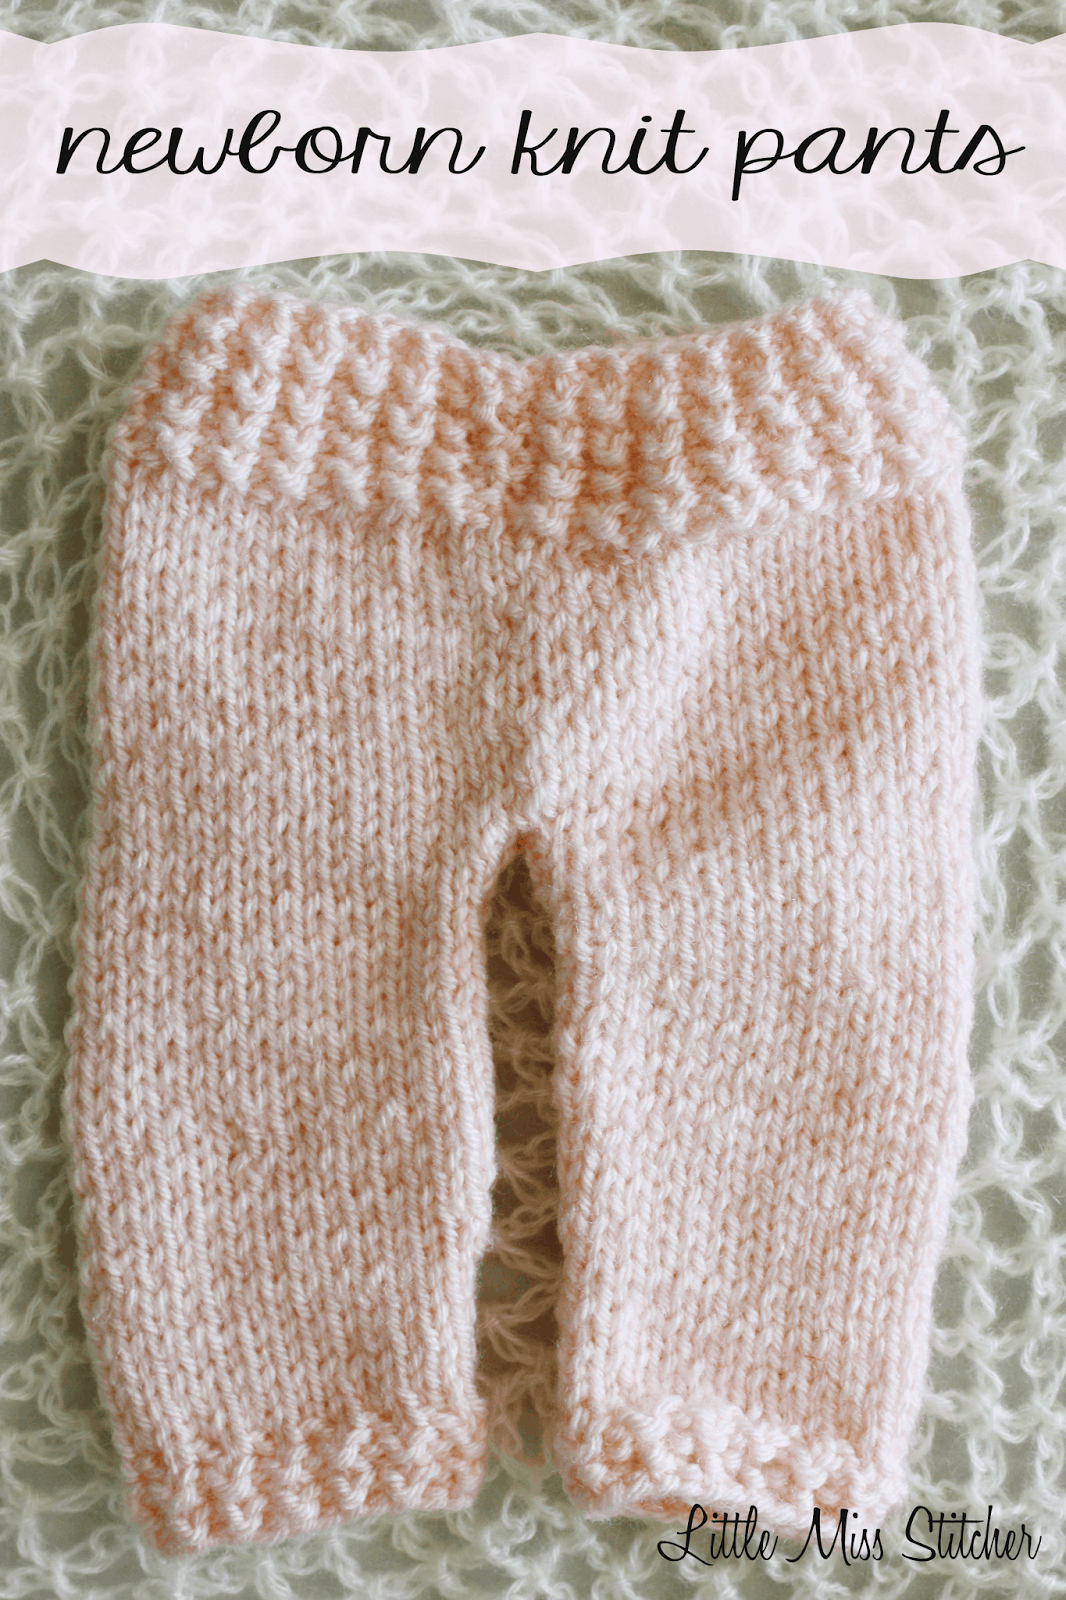 Newborn knit pants